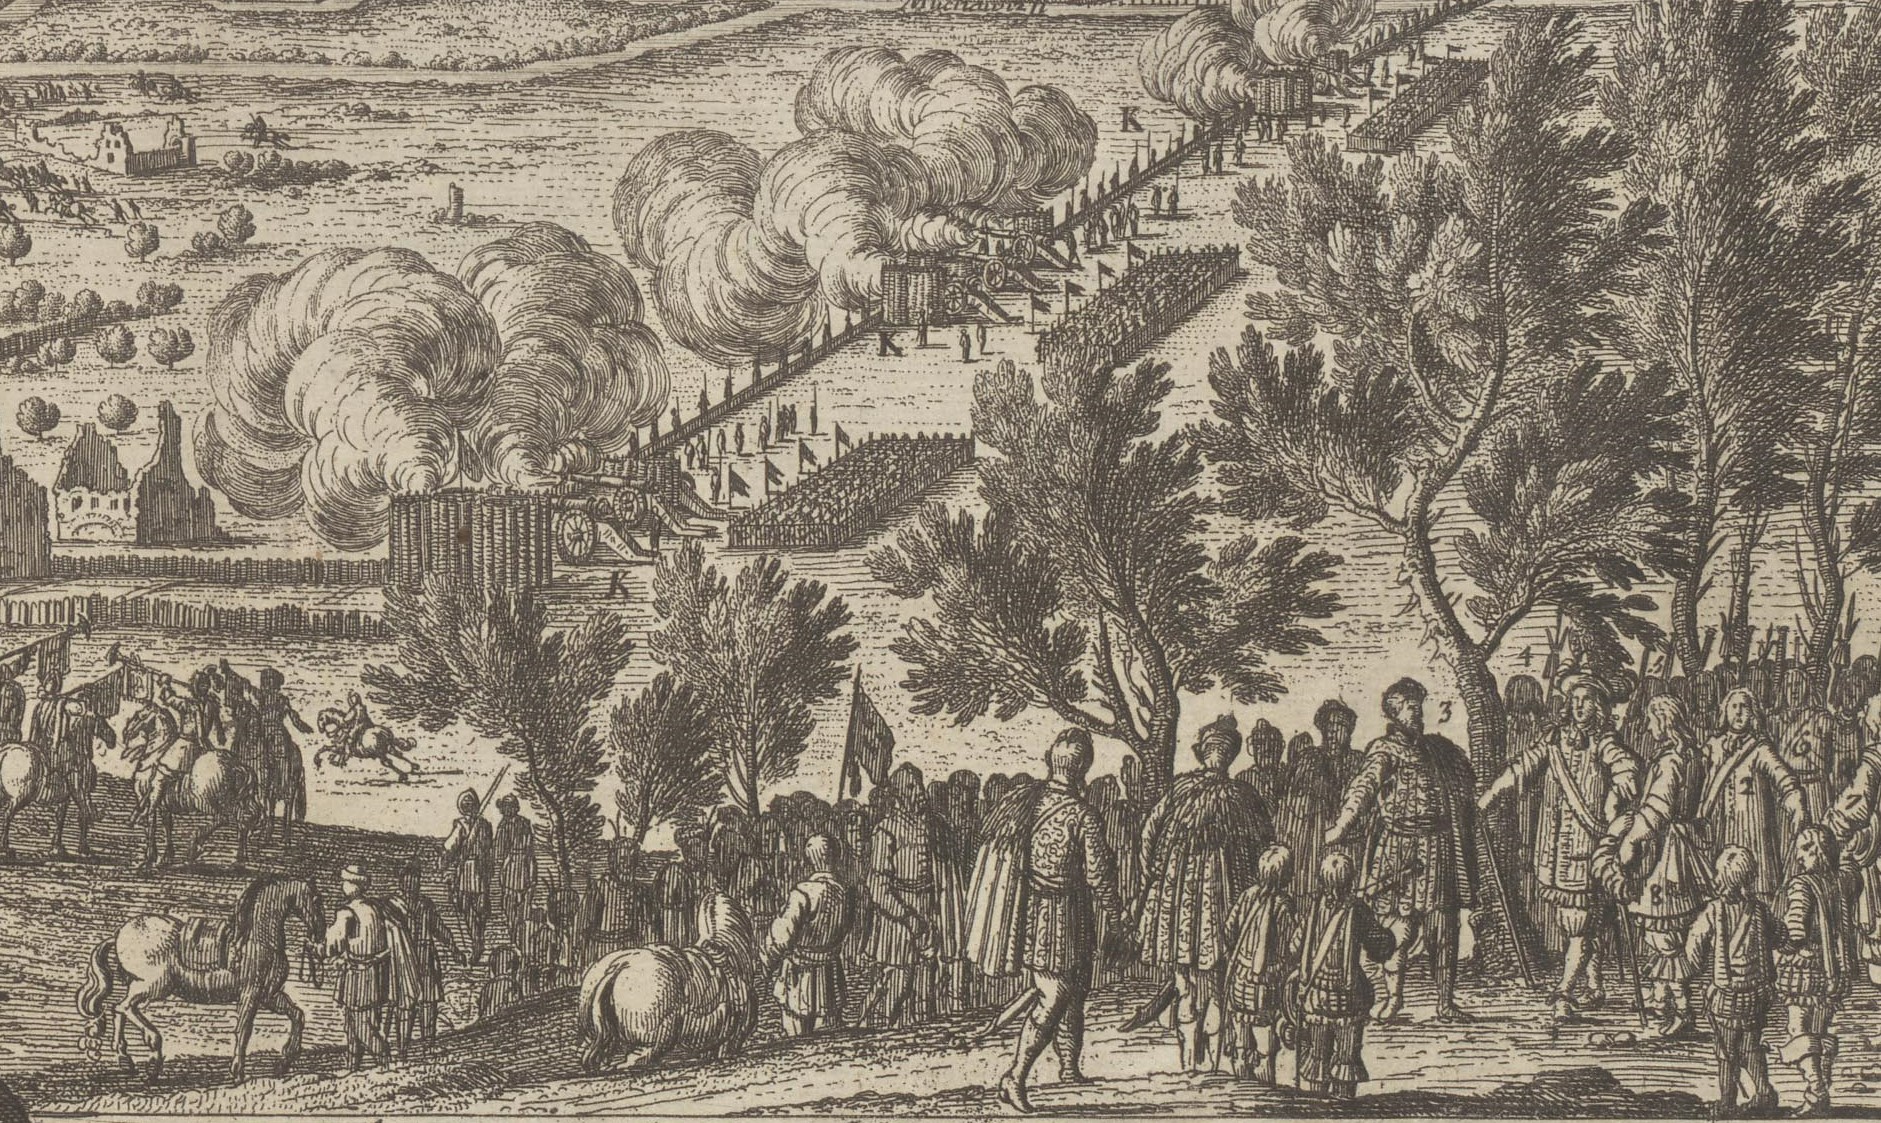 Svartvit gravyr föreställande soldater och män i peruker vid en träddunge, i bakgrunden syns en stad som beskjuts med kanoner.